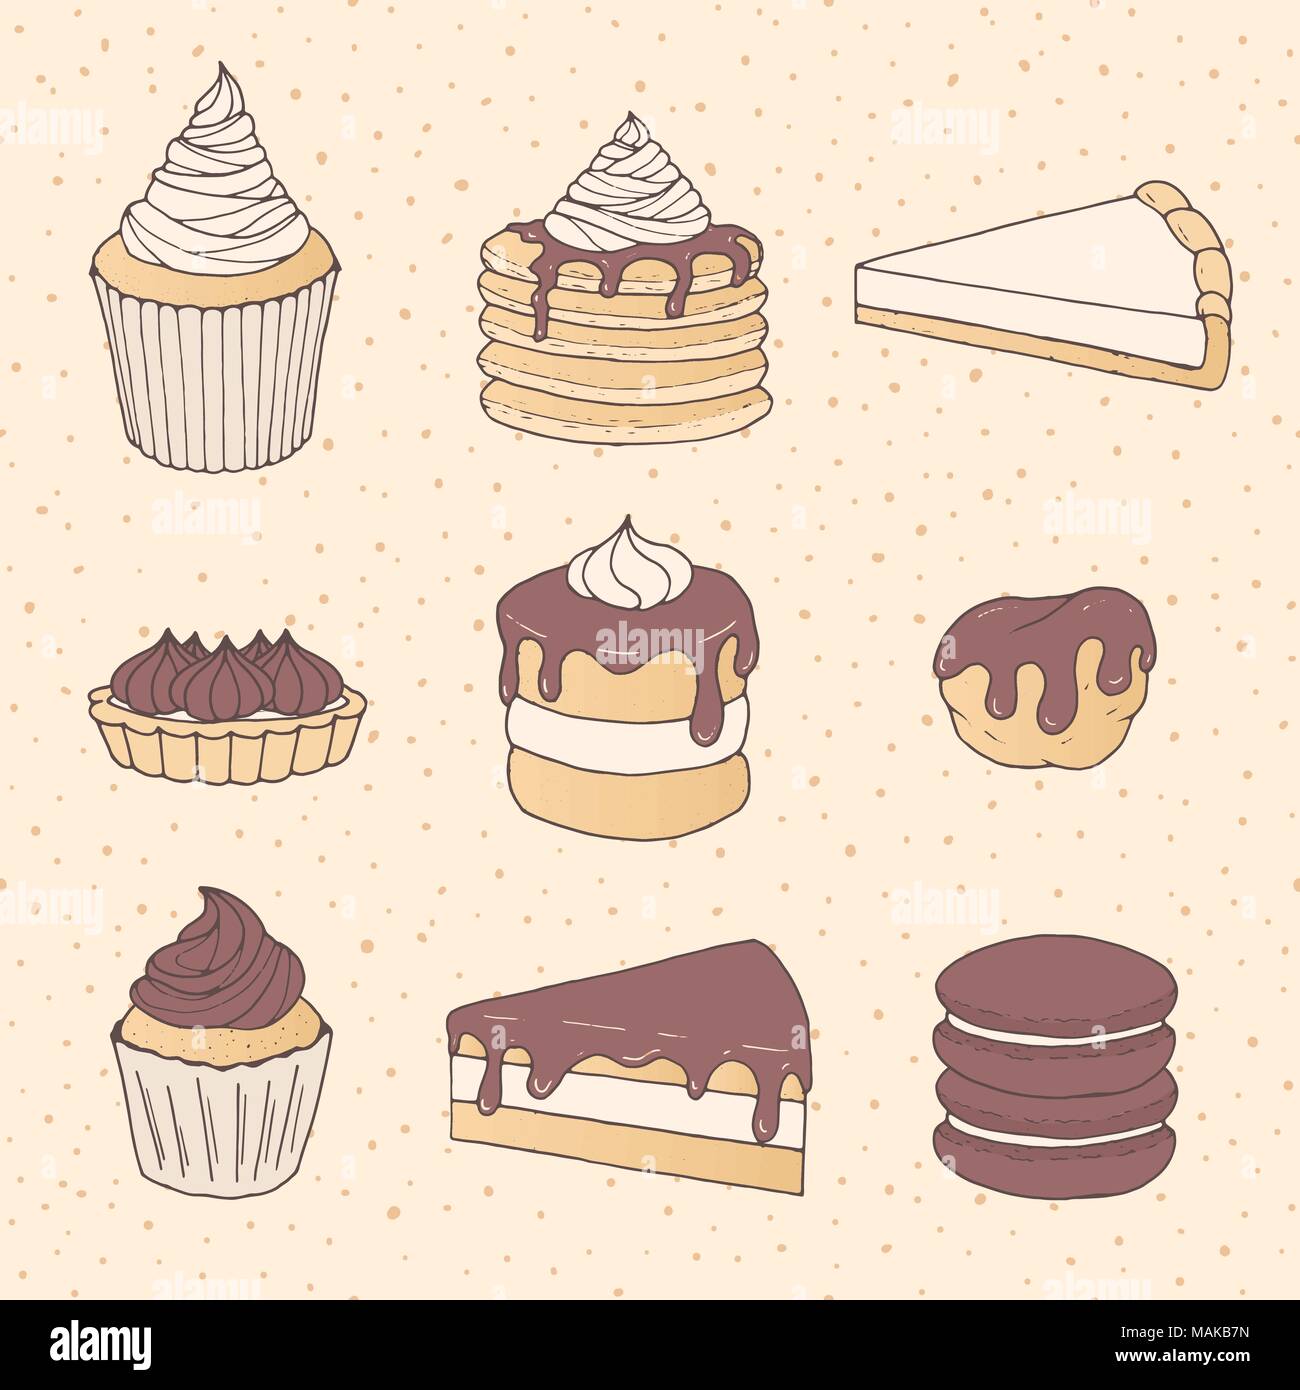 Disegnata a mano vector set di pasticceria con torta e pezzi di torta, tortine, macarons eclairs e ricoperto di cioccolato. Caramelle sullo sfondo tratteggiato. Illustrazione Vettoriale